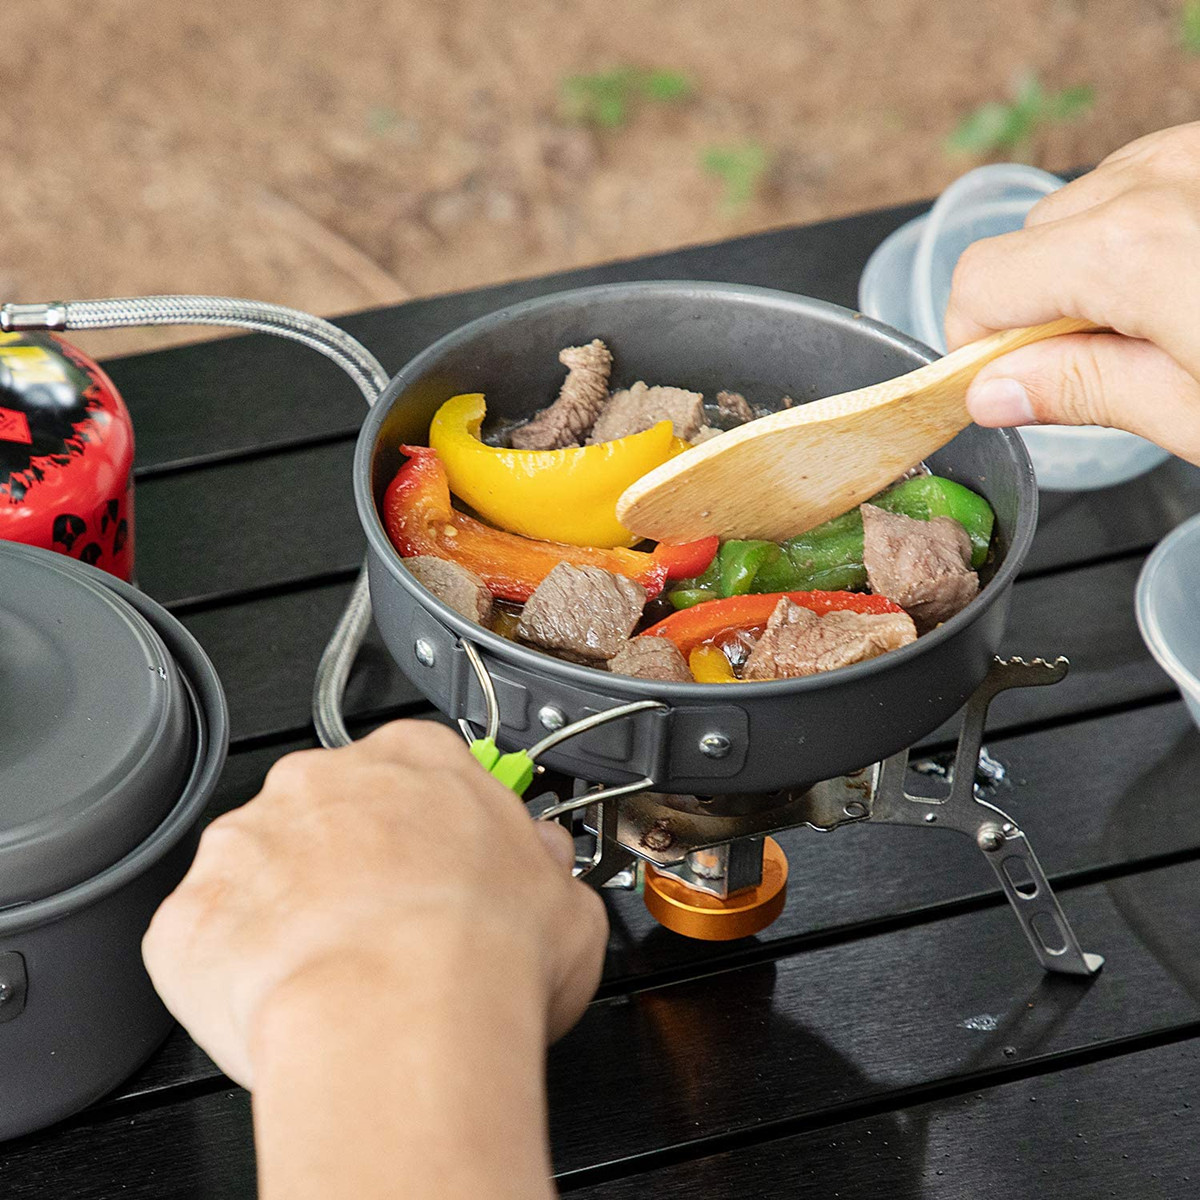 Portable-14pcs-Outdoor-Camping-Cookware-Set-Hiking-Cooking-Pot-Pan-Picnic-Set-AU-1935459-8